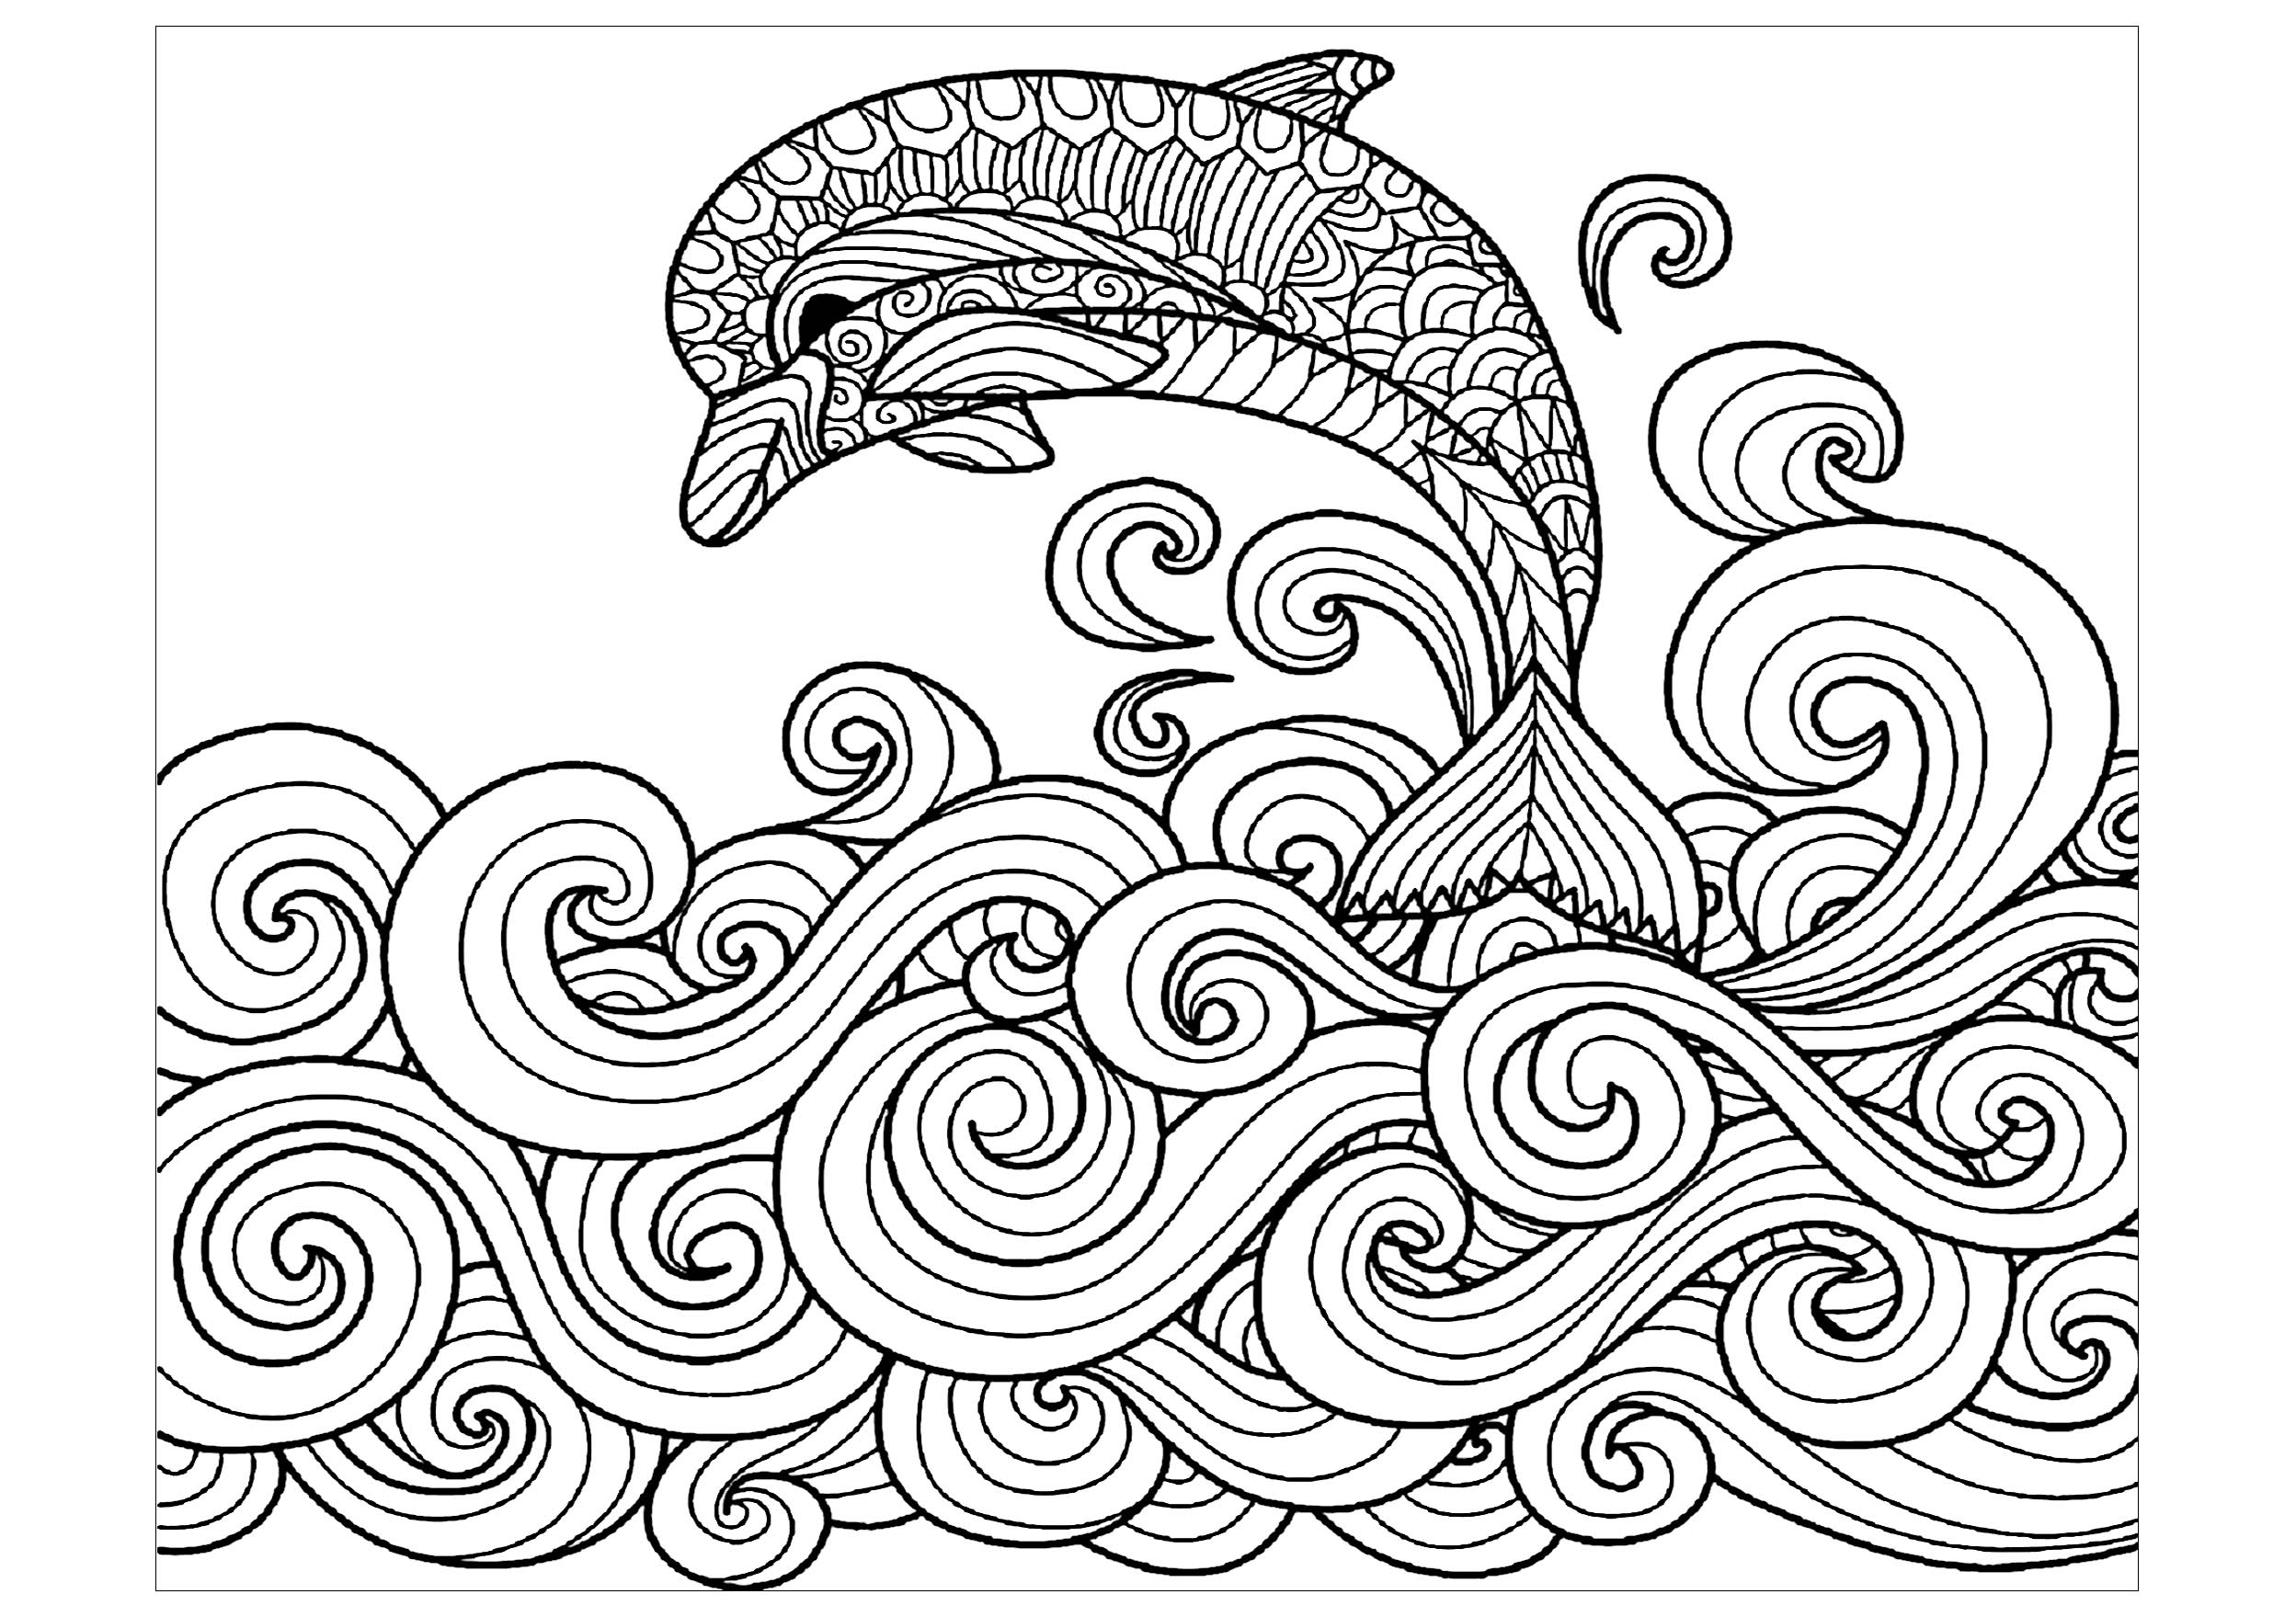 Desenhos simples grátis para colorir de Golfinhos, Artista : Bimdeedee   Fonte : 123rf